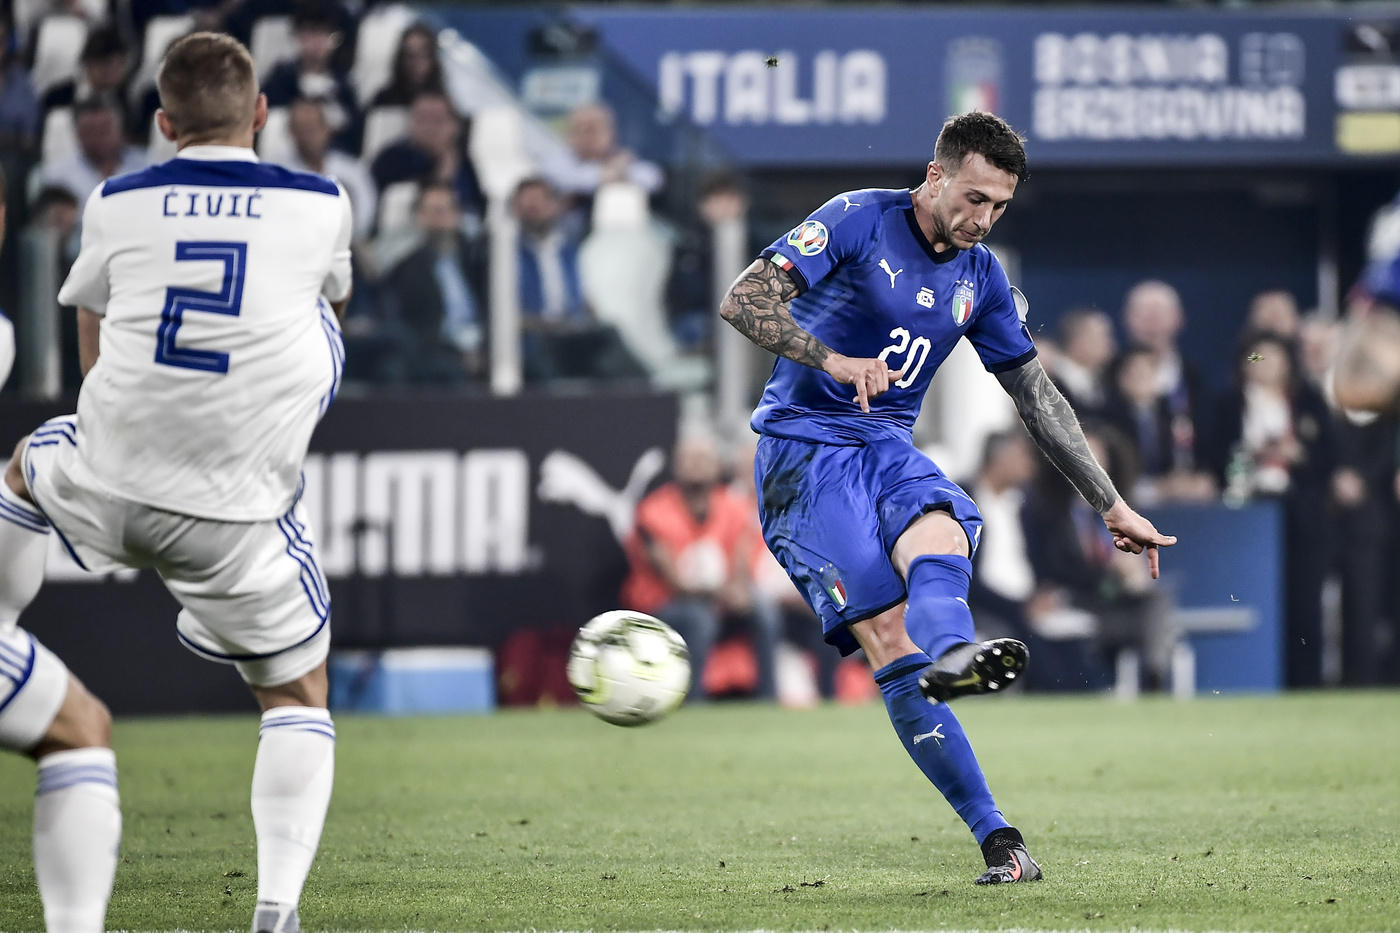 Italia ngược dòng, kéo dài chuỗi bất bại và những điểm nhấn từ trận thắng Bosnia